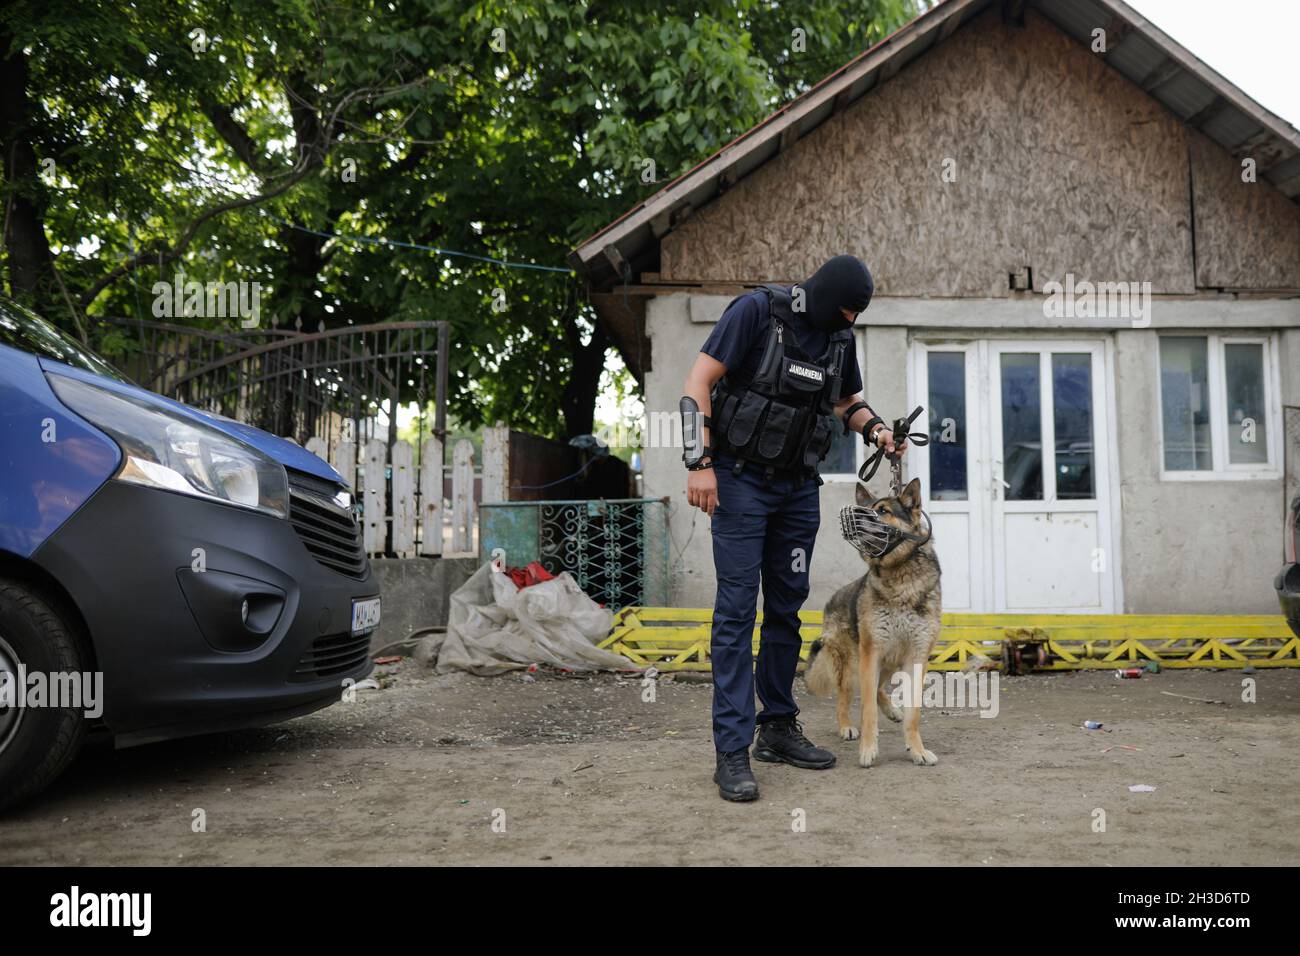 Sarulesti, Rumania - 27 de mayo de 2021: Policía rumana de K9 oficiales con su perro. Foto de stock